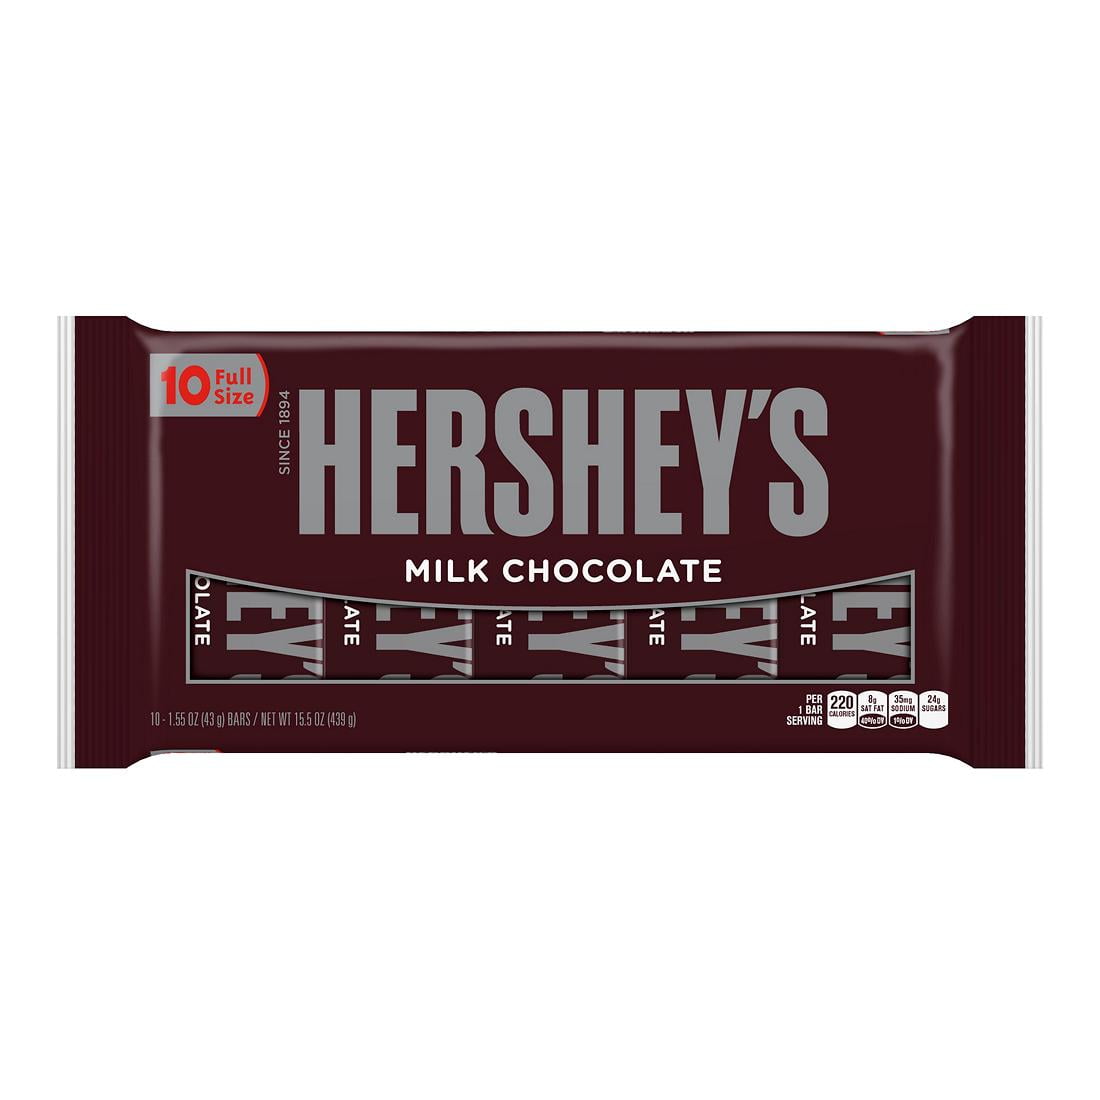 Hershey's Milk Chocolate Bars, 10 ct. - Walmart.com ...